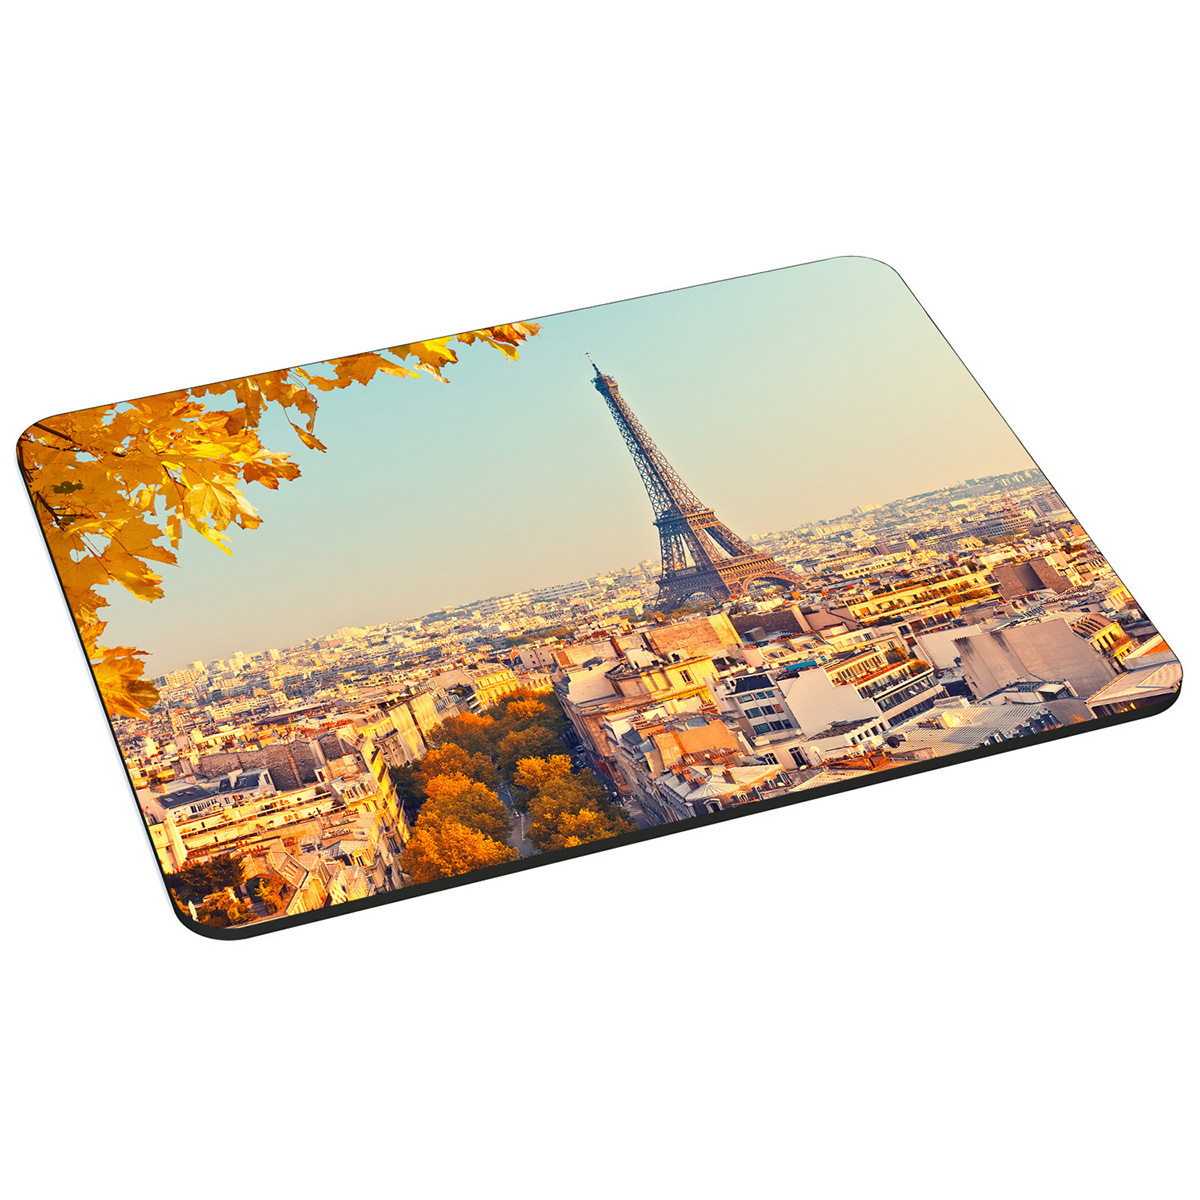 PEDEA Mauspad Design Parisian x cm cm) Sunset, Mauspad Gr. (18 22 L